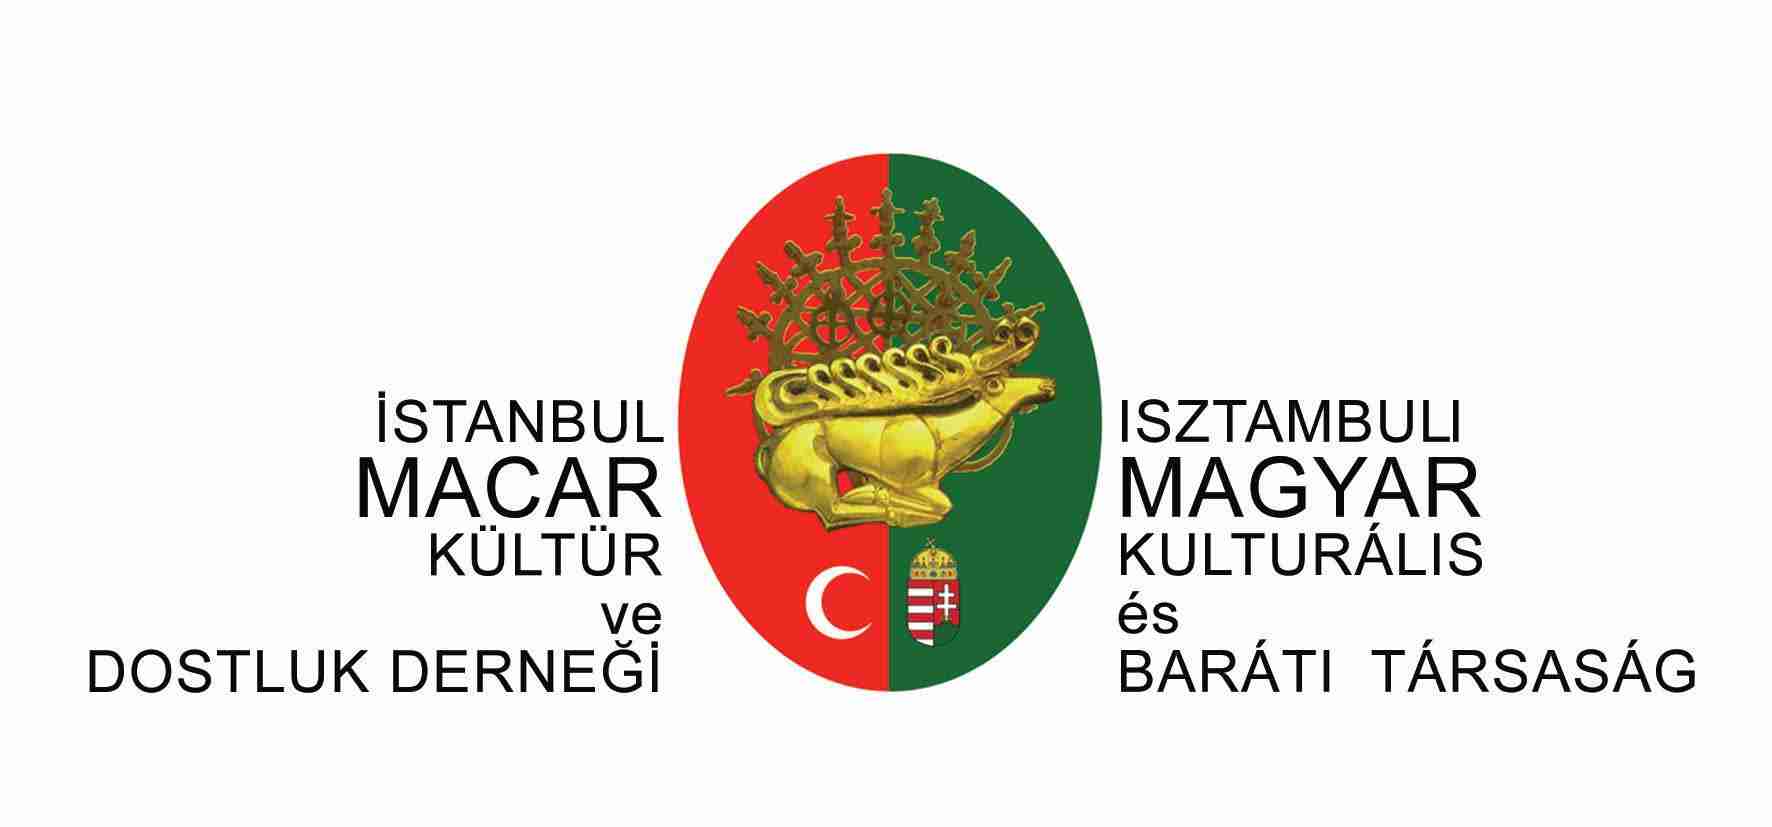 Isztambuli Magyar Kulturális és Baráti Társaság